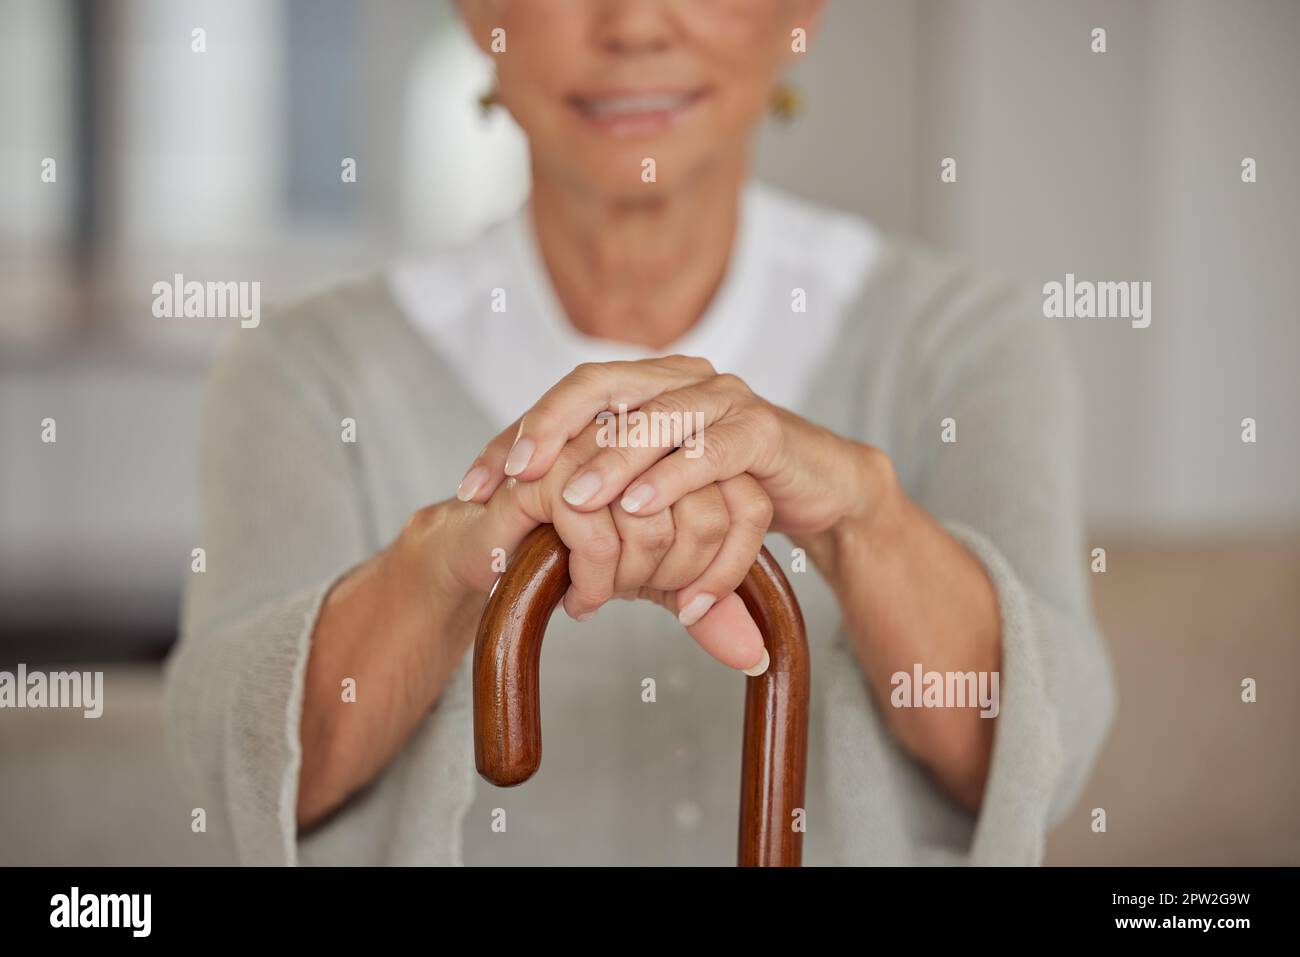 Ältere behinderte Frau, die einen Stock in einem Pflegeheim hält. Nahaufnahme einer älteren Dame, die eine Gehhilfe in der Hand hält und sich in einer Gesundheitseinrichtung entspannt Stockfoto